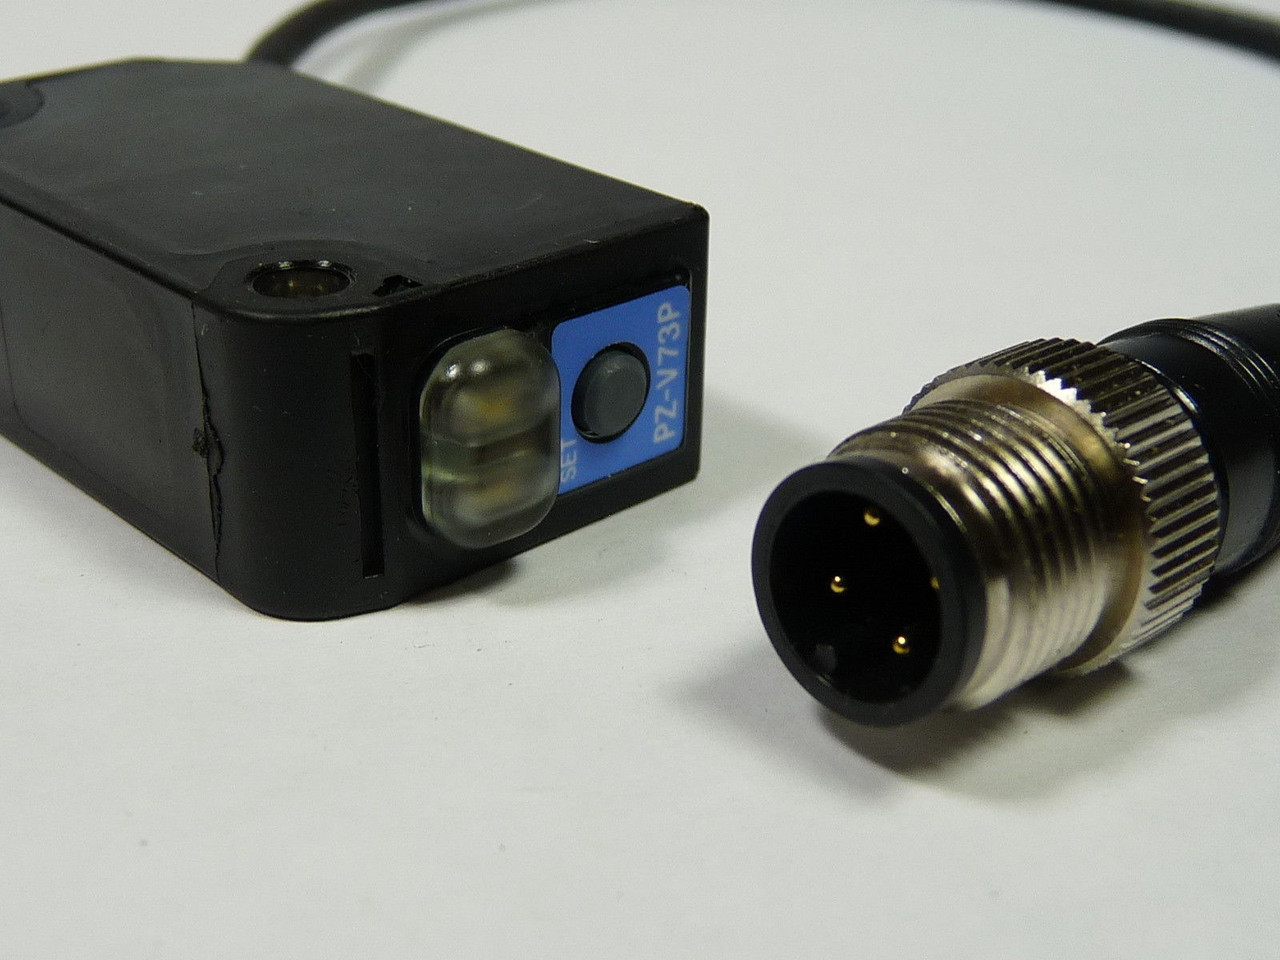 Keyence Corp PZ-V73P Photoelectric Sensor 4 Pin 12-24VDC USED